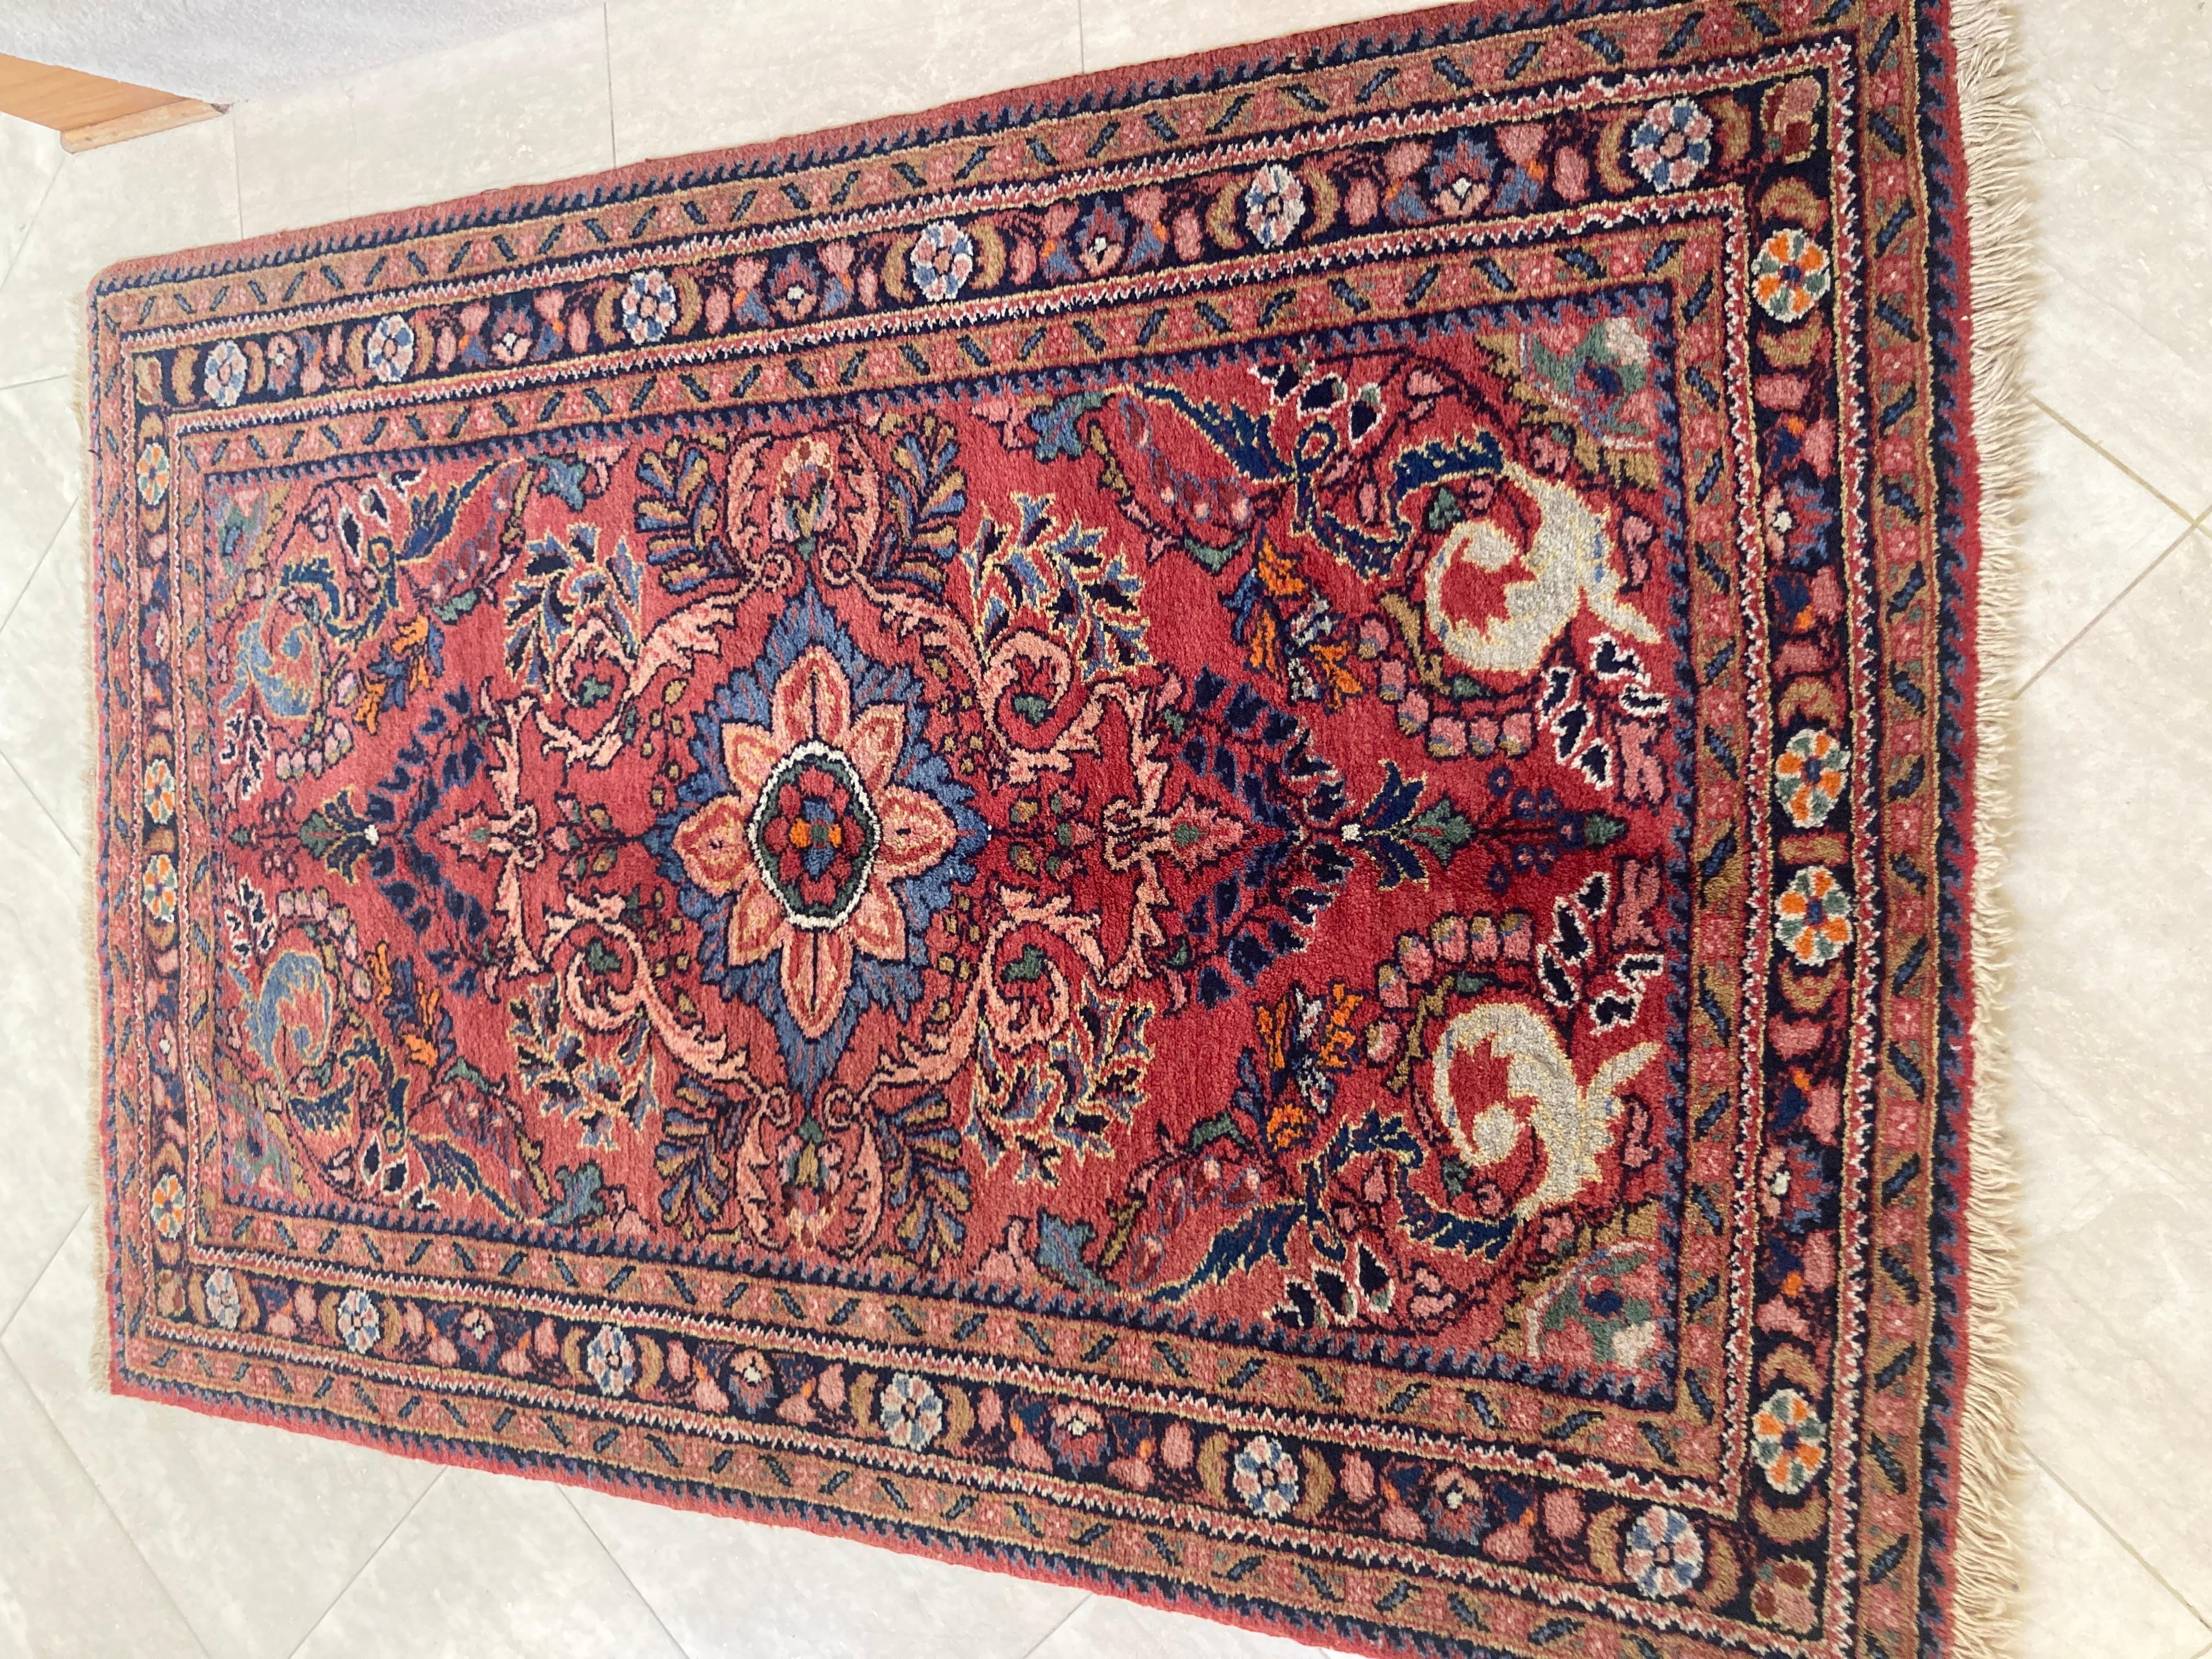 Kleiner handgeknüpfter Teppich aus der Osttürkei,
Antiker orientalischer Akzentteppich, Teppich oder Matte.
Türkischer Vintage-Teppich mit seltenen Farben. 
Dieser handgeknüpfte Teppich hat ein ungewöhnliches grünes Feld mit blauen und roten